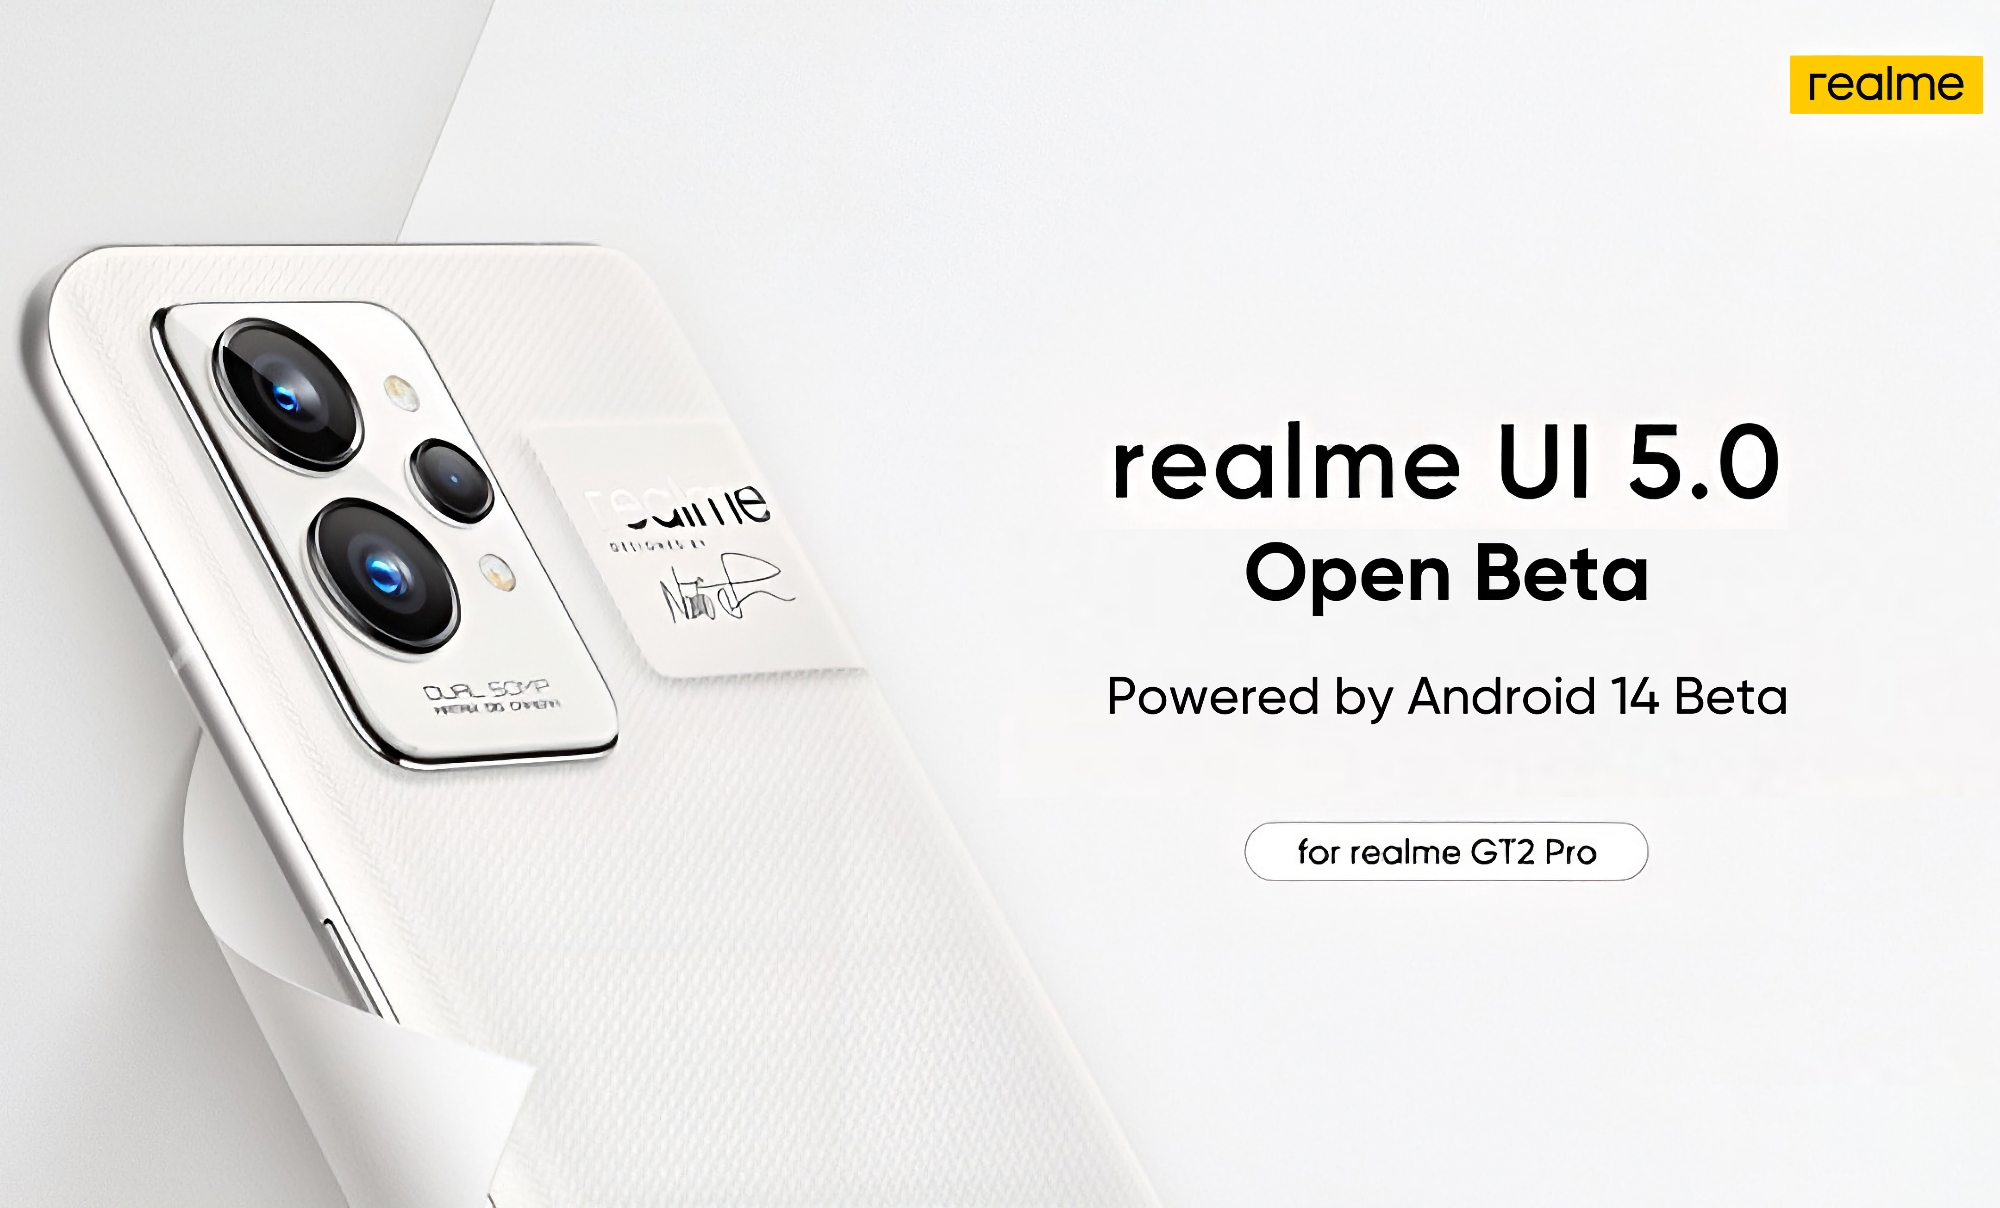 Das realme GT 2 Pro hat die Android 14 Beta mit der realme UI 5.0 Hülle erhalten